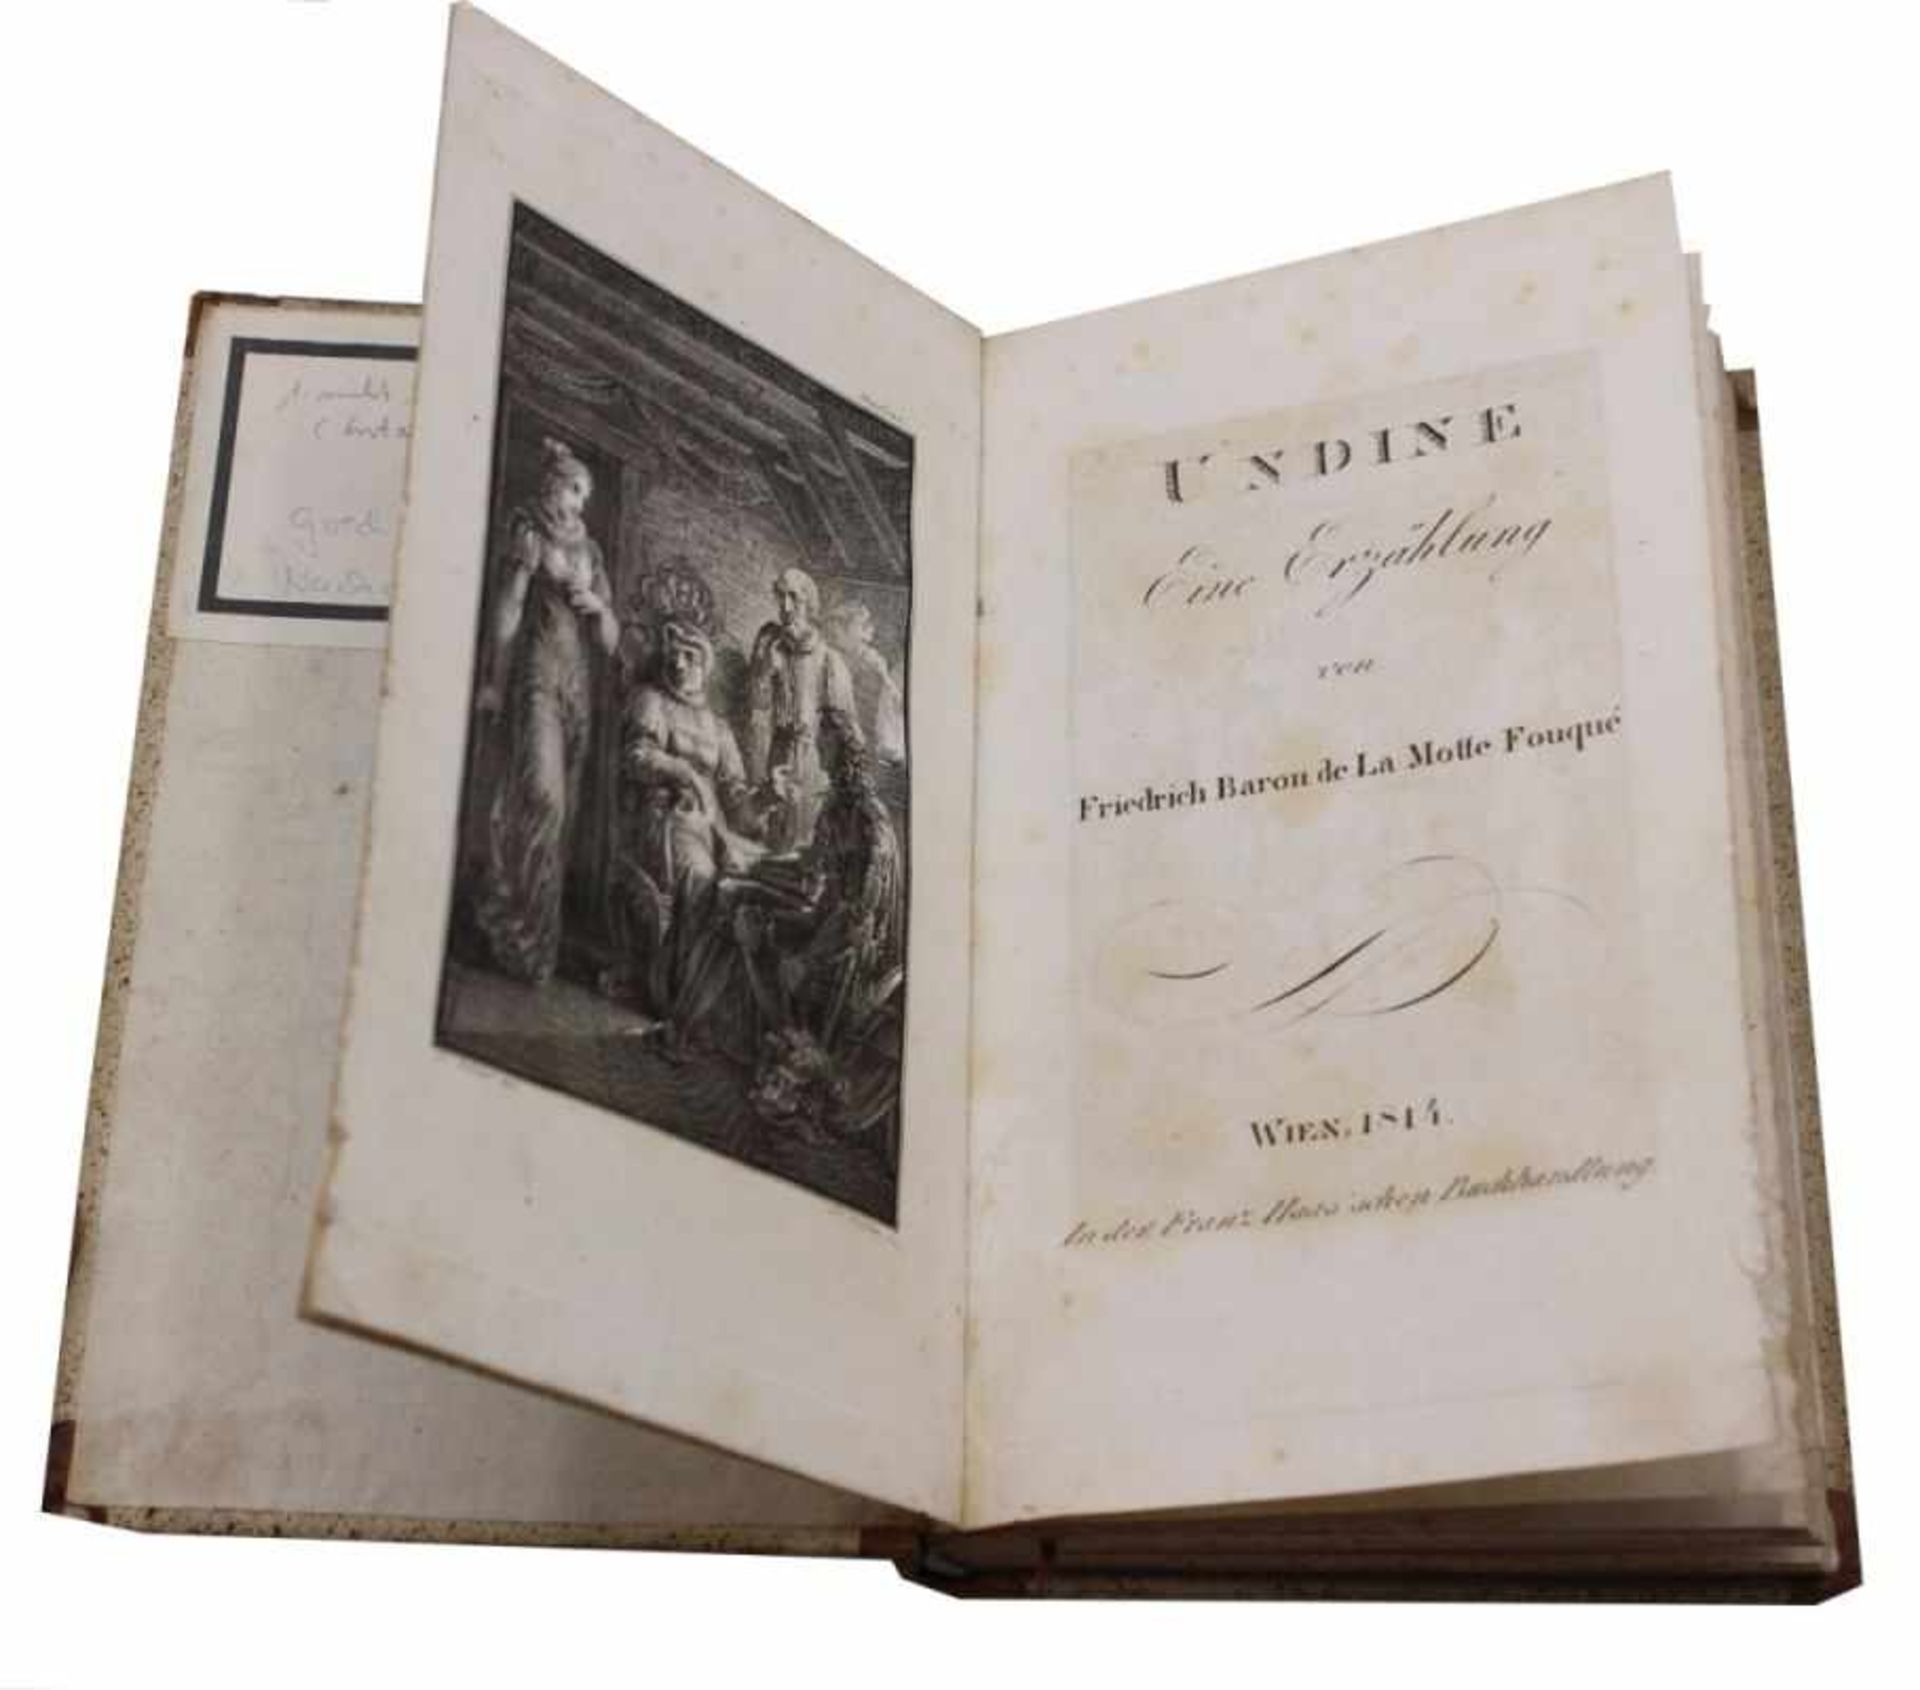 Buch - Friedrich Baron de La Motte Fouqué (1777 Brandenburg - 1843 Berlin) "Undine - Eine